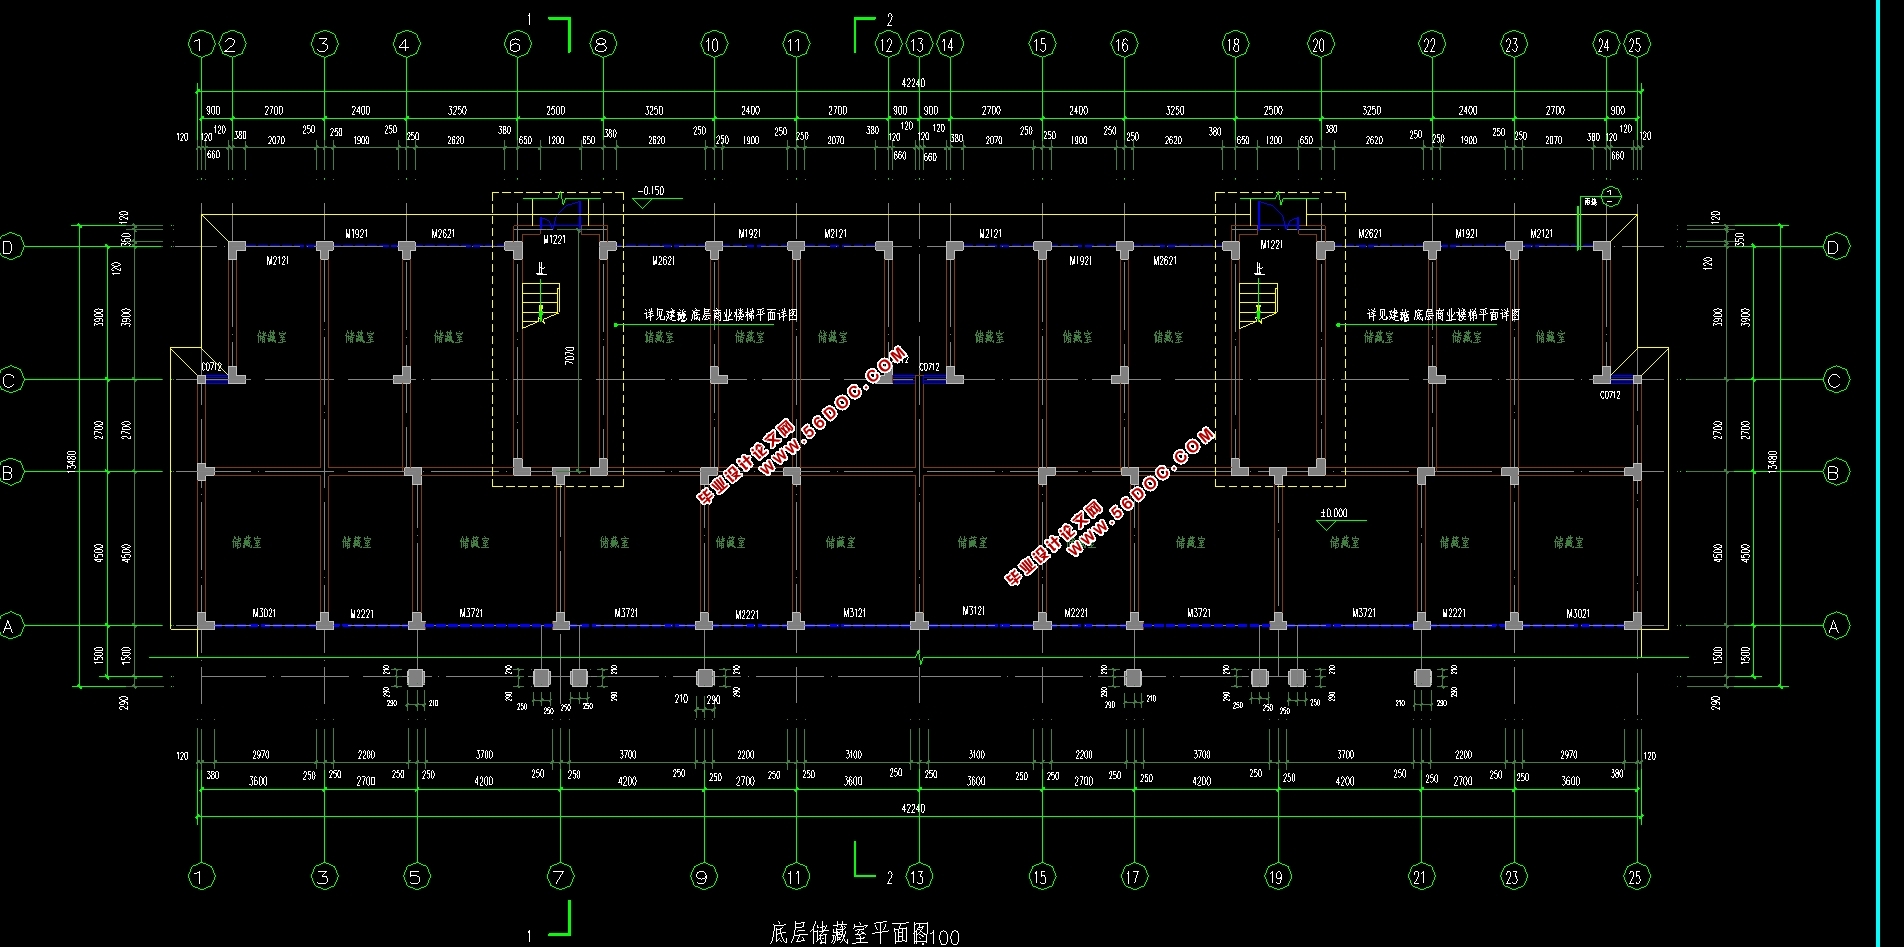 六层3280平米城南安置小区6#楼项目施工组织设计(施工图,平面布置图,施工进度计划)